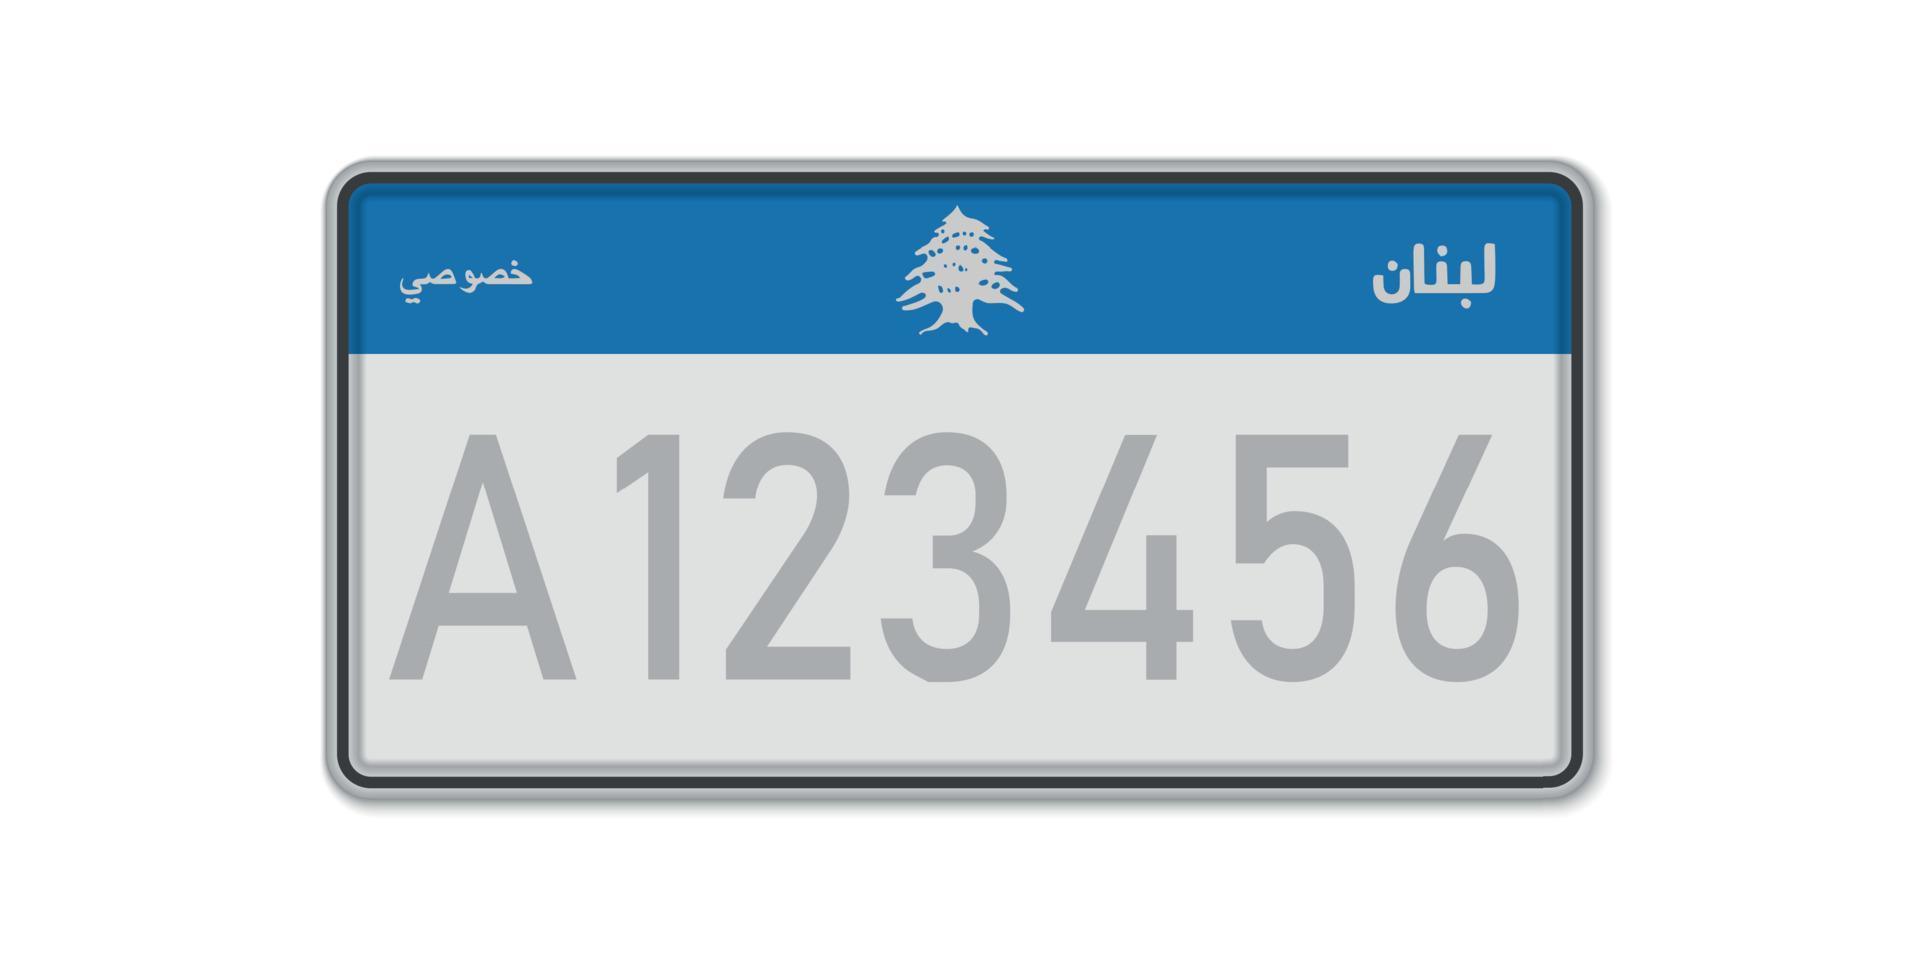 placa de carro. licença de registro de veículo do líbano. com vetor